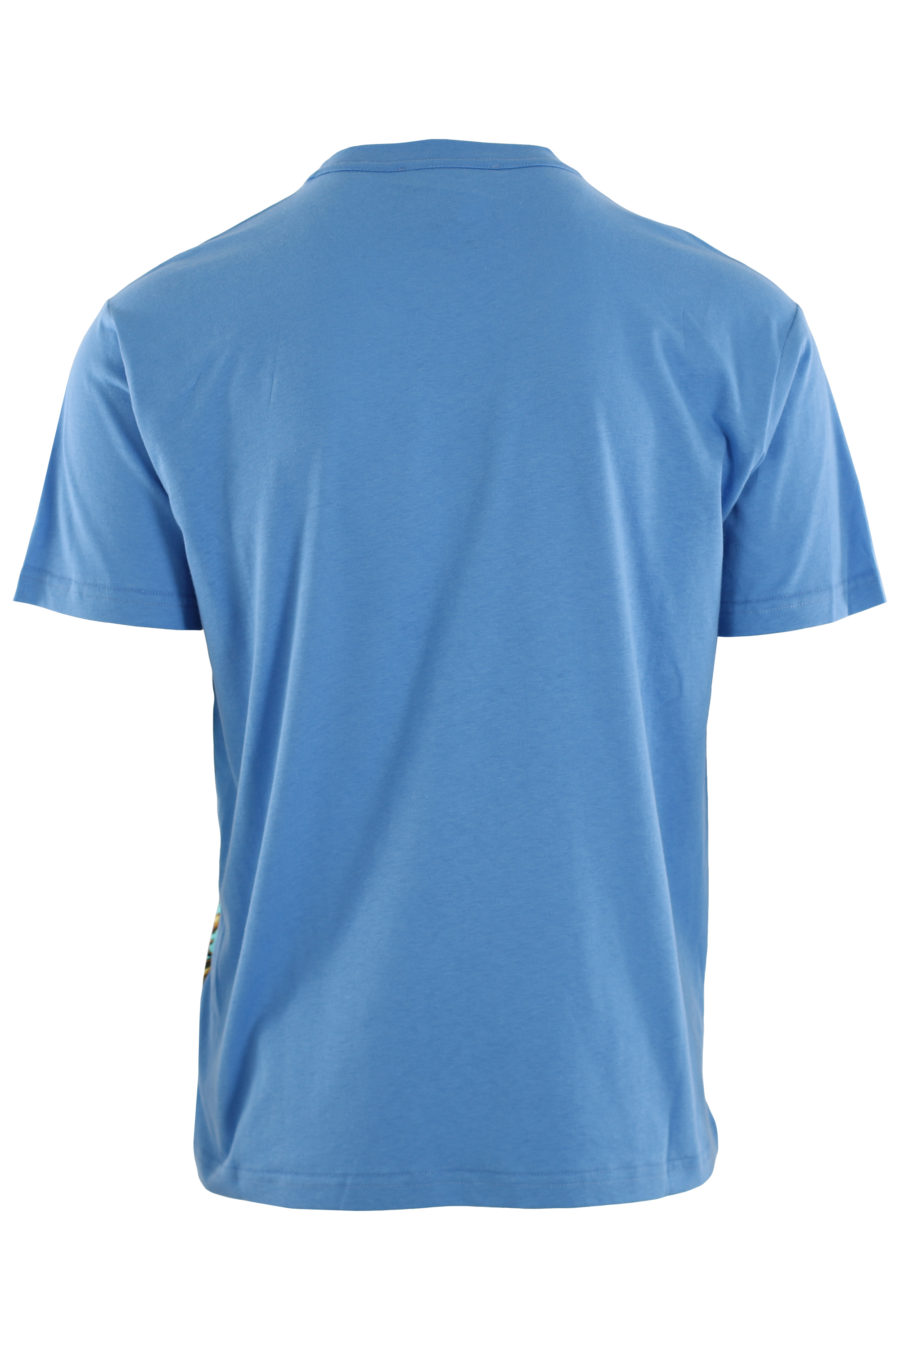 Camiseta azul con estampado barroco "garland sun" - IMG 0416